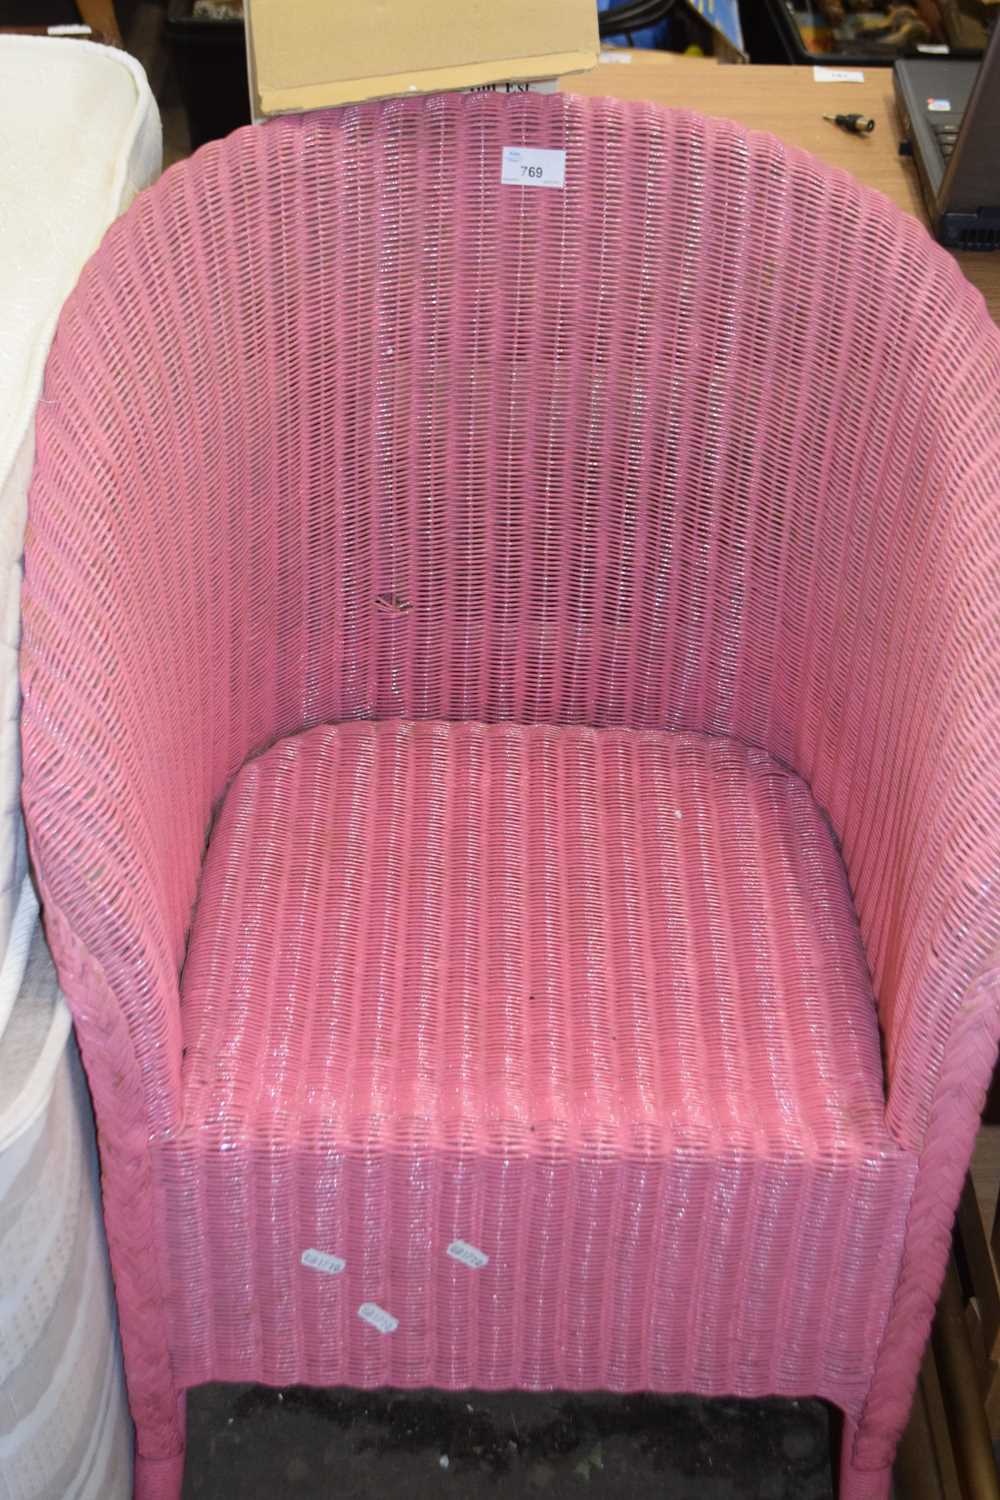 Pink Lloyd Loom style chair